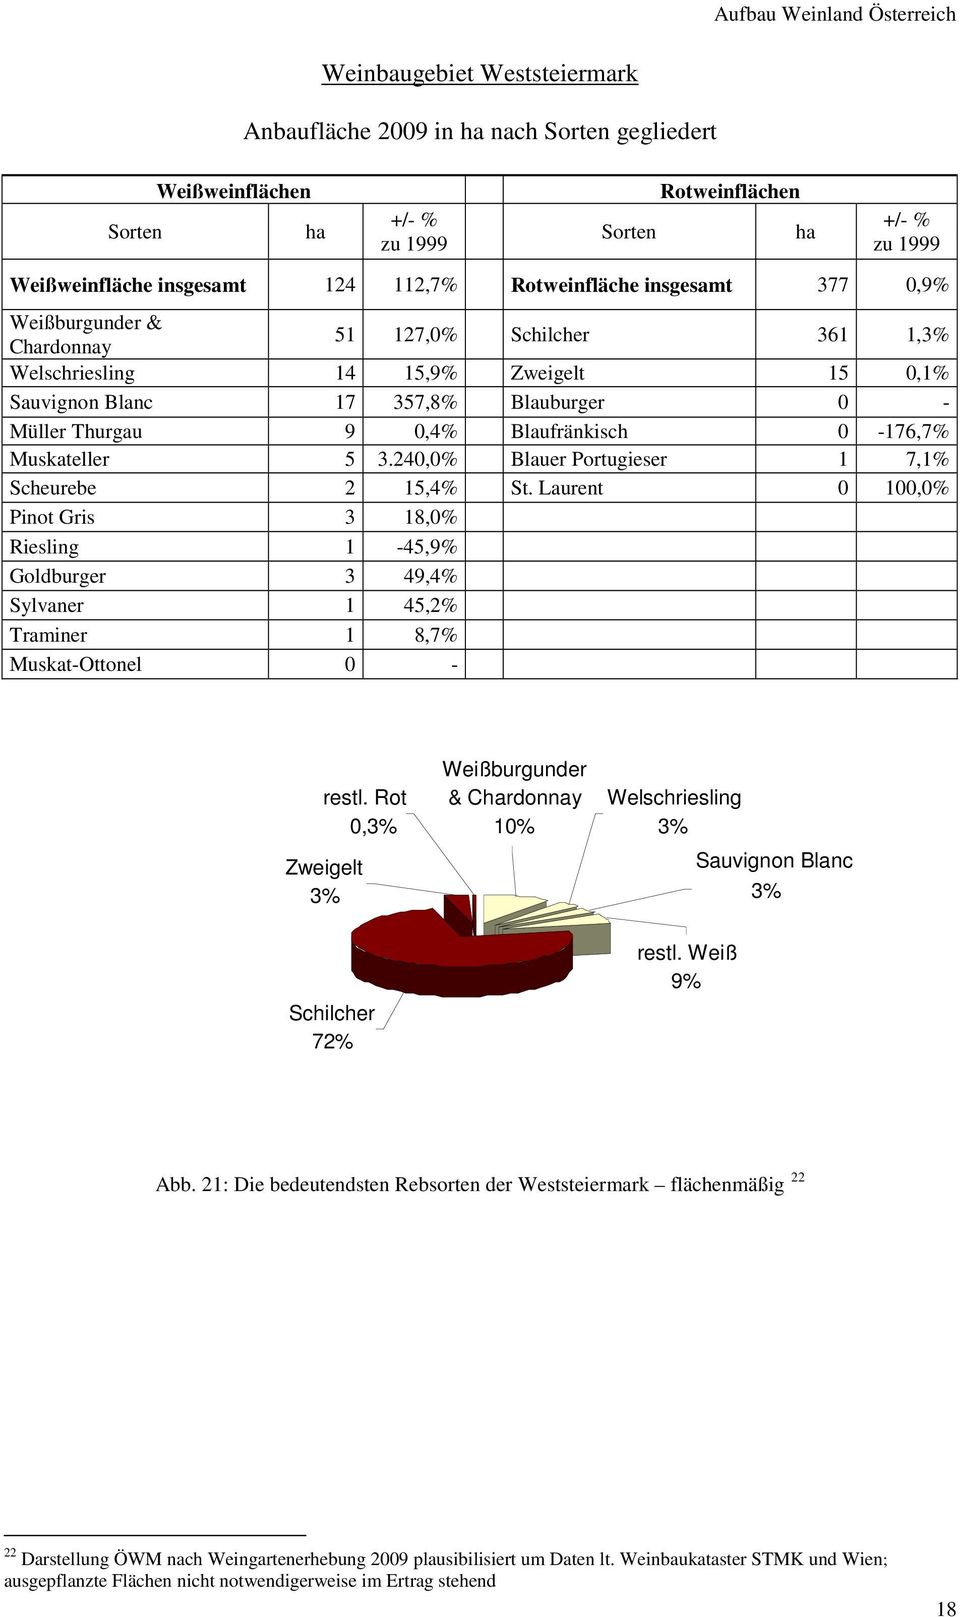 Thurgau 9 0,4% Blaufränkisch 0-176,7% Muskateller 5 3.240,0% Blauer Portugieser 1 7,1% Scheurebe 2 15,4% St.